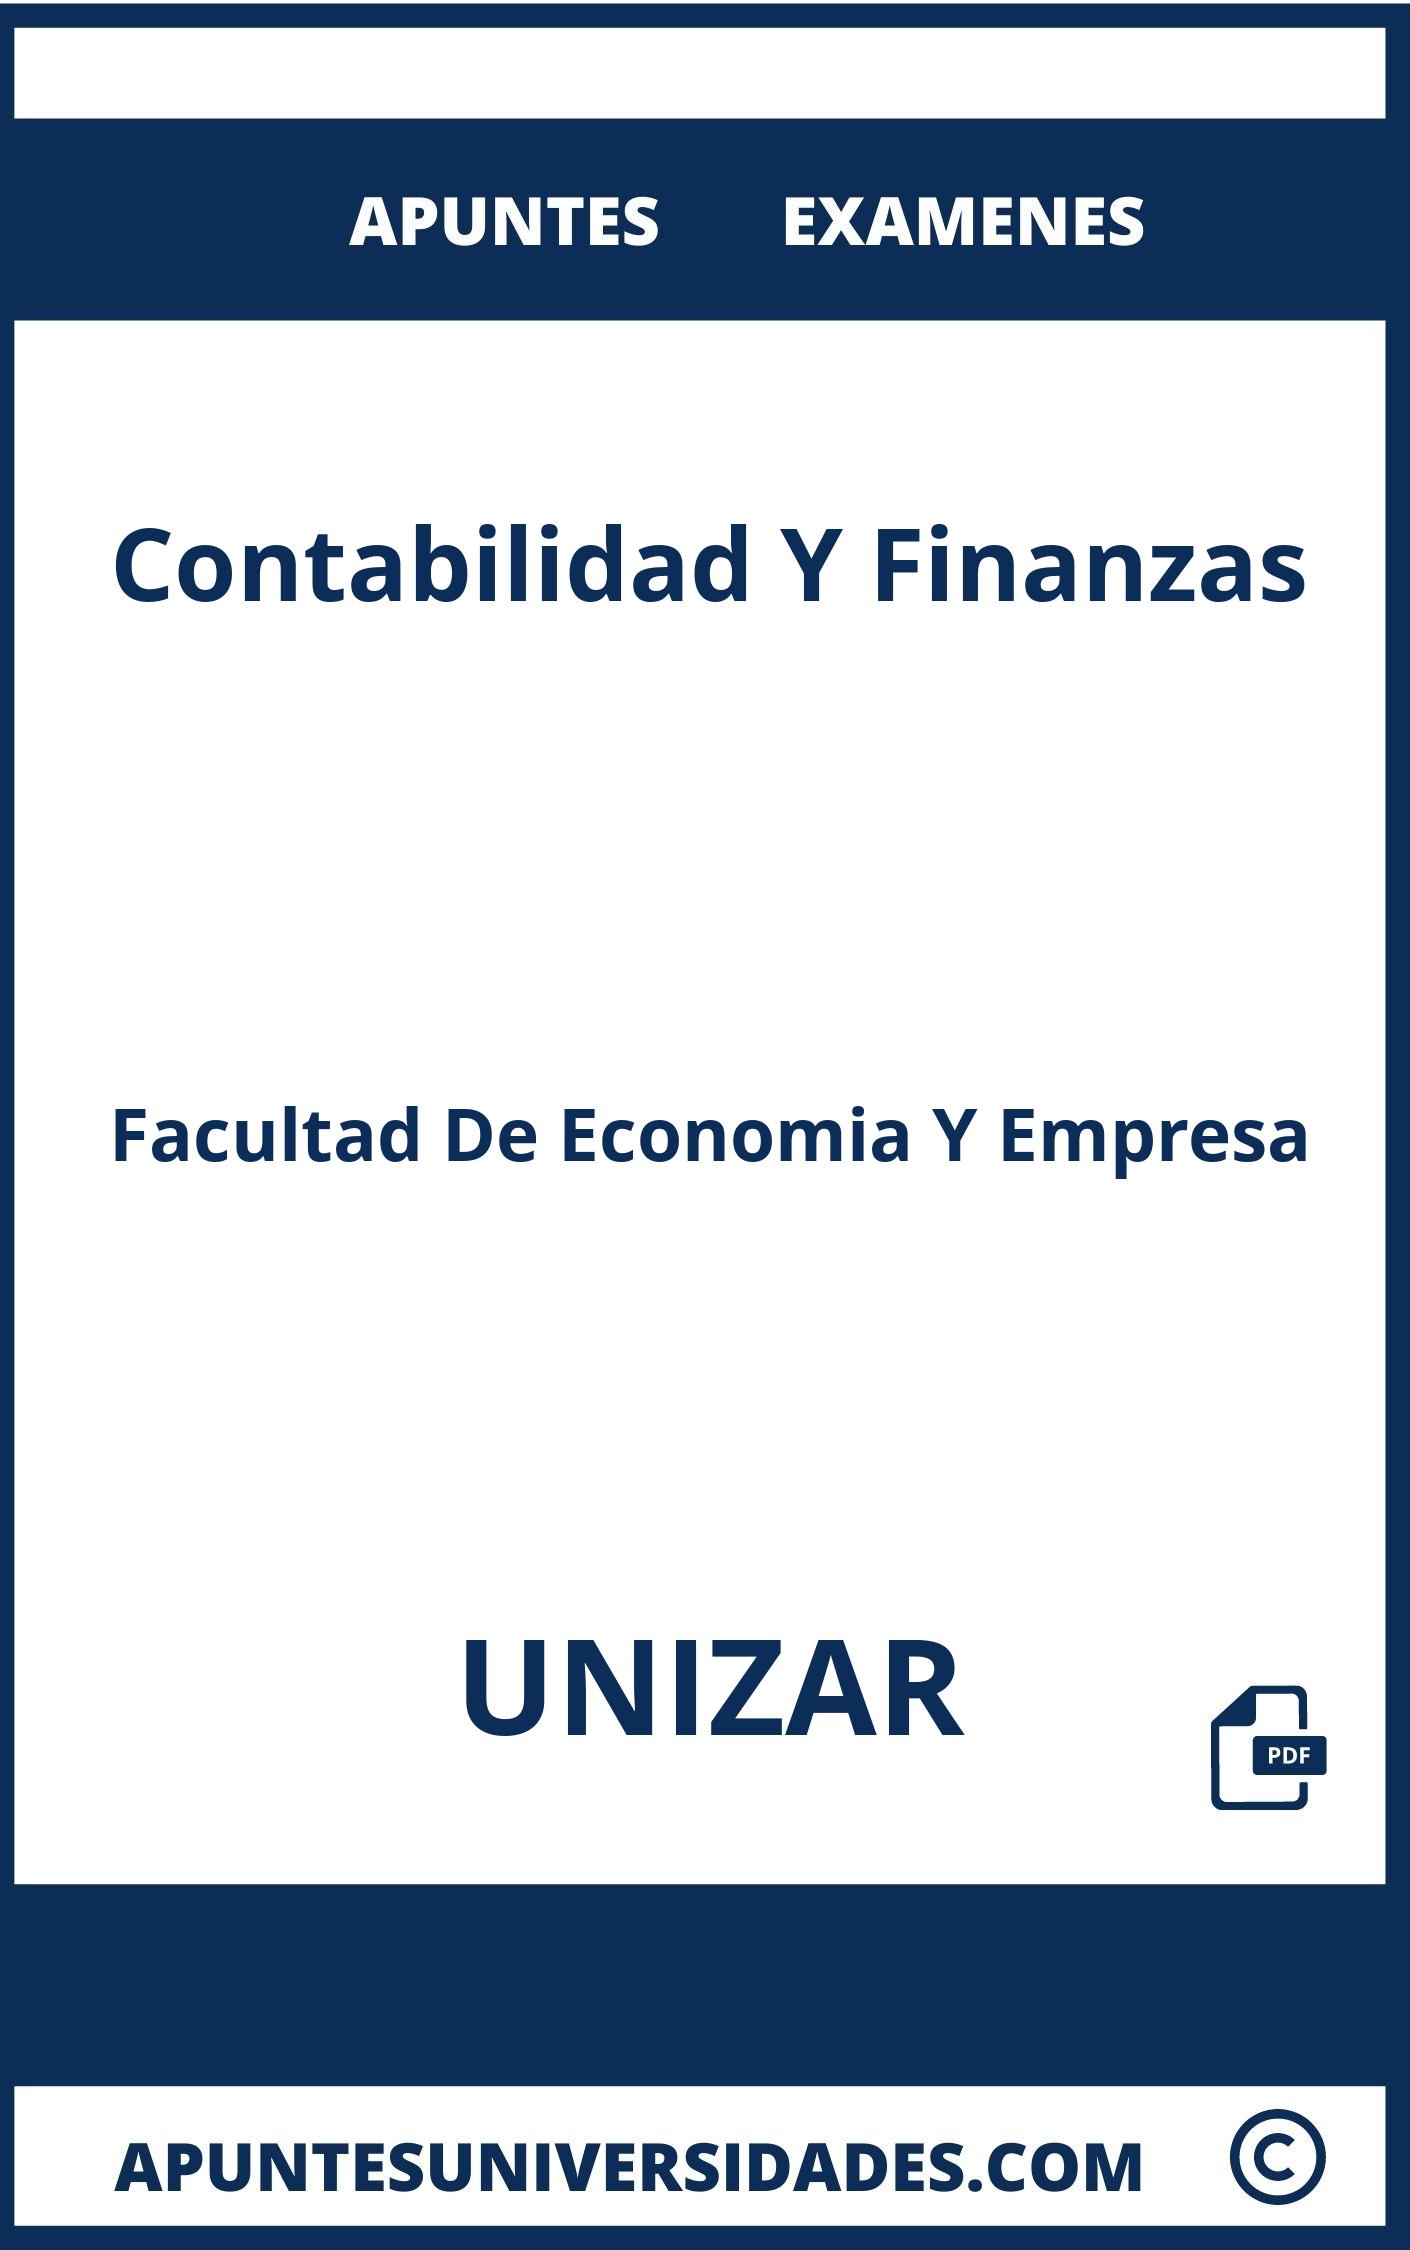 Apuntes y Examenes Contabilidad Y Finanzas UNIZAR